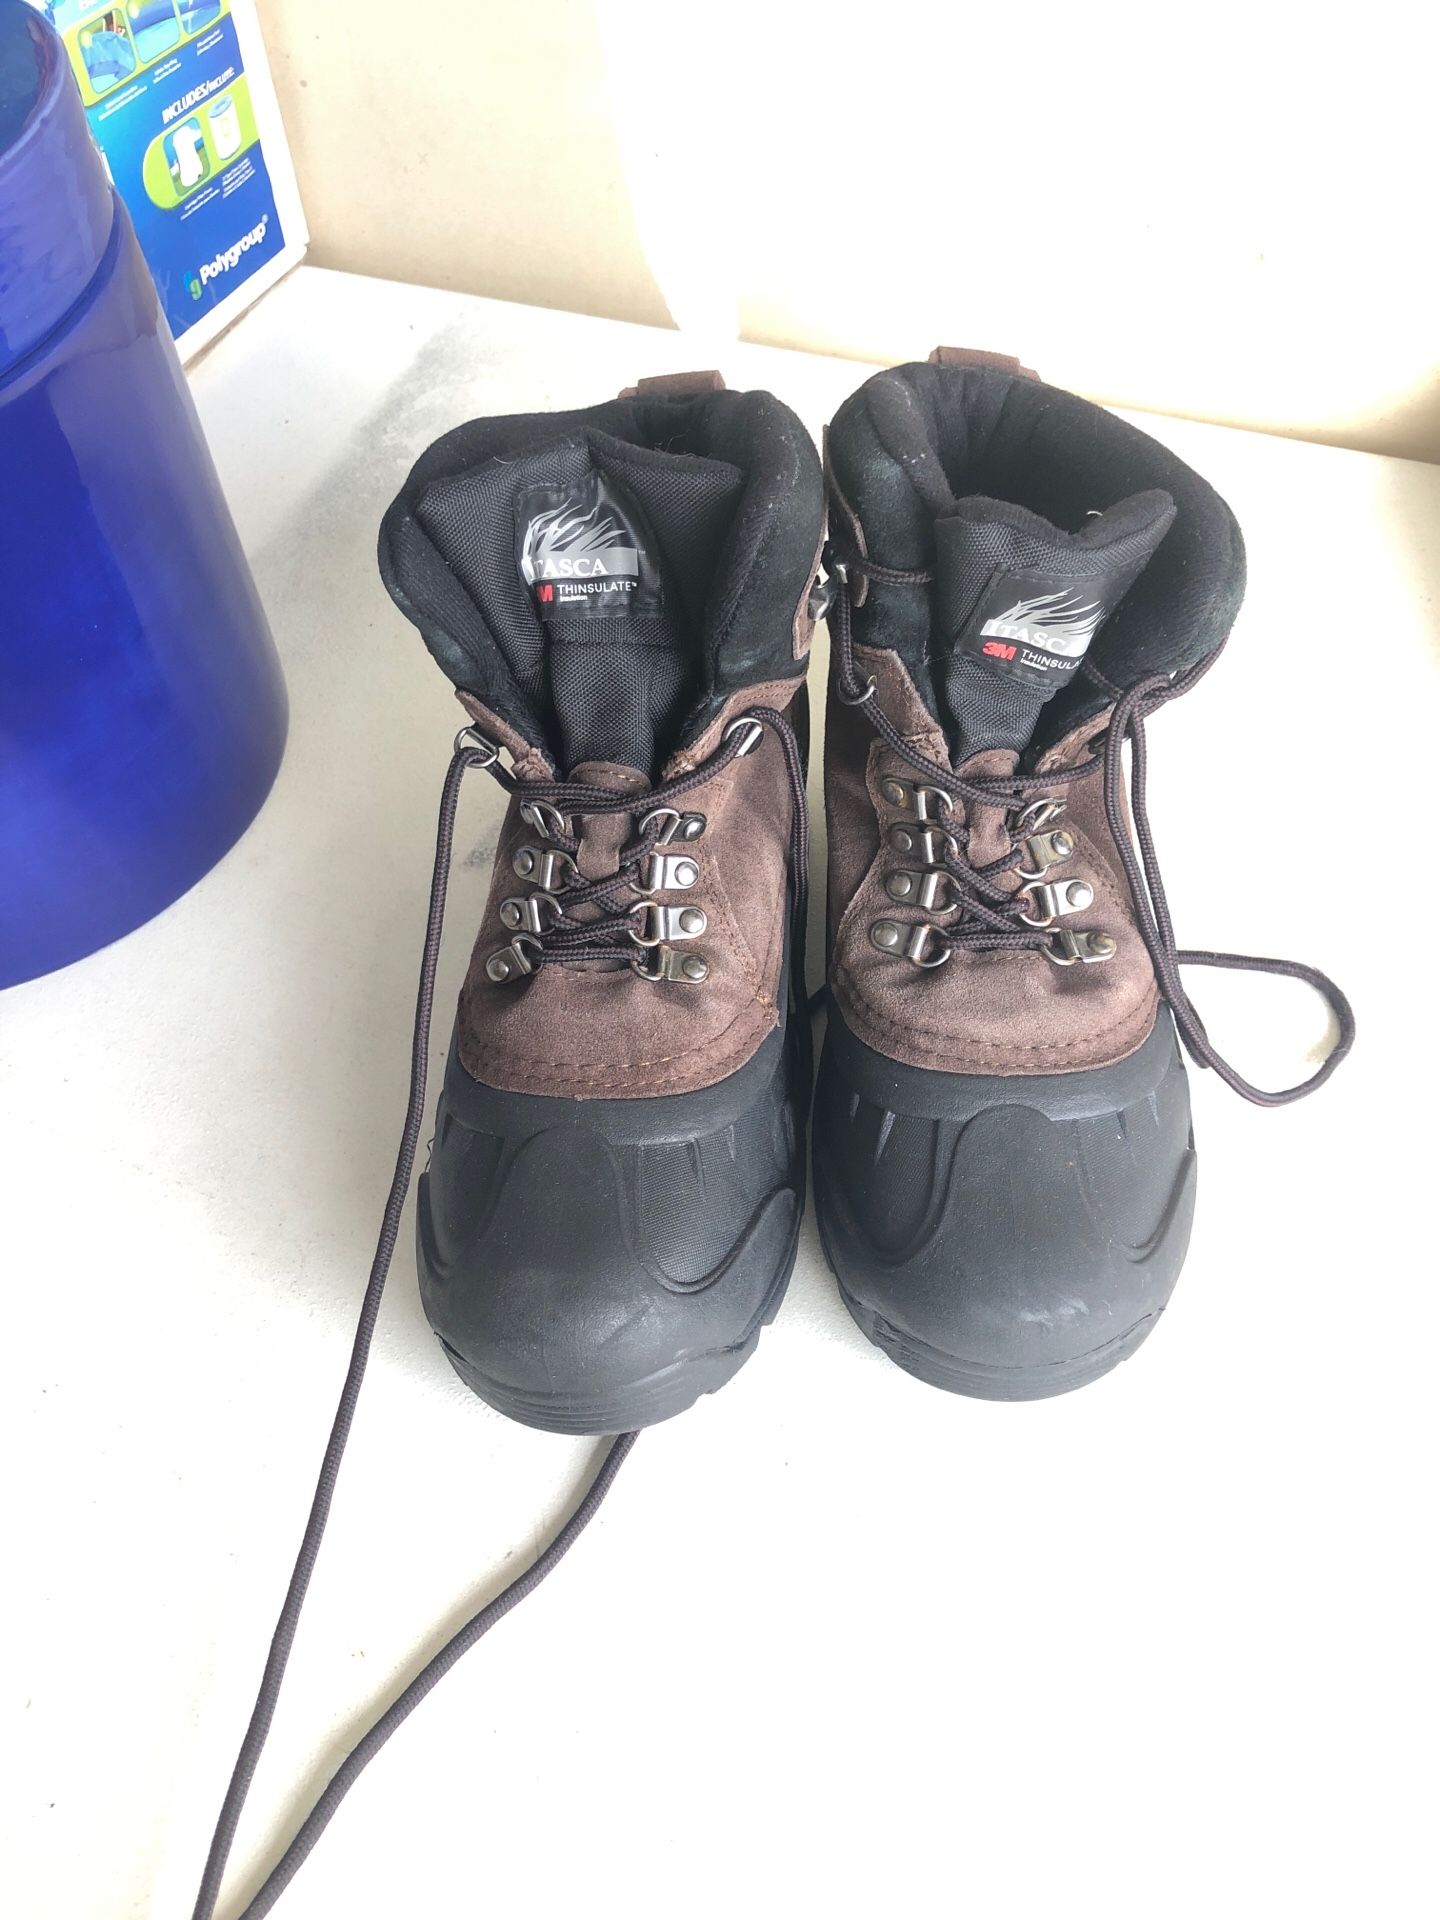 Men’s boots size 8